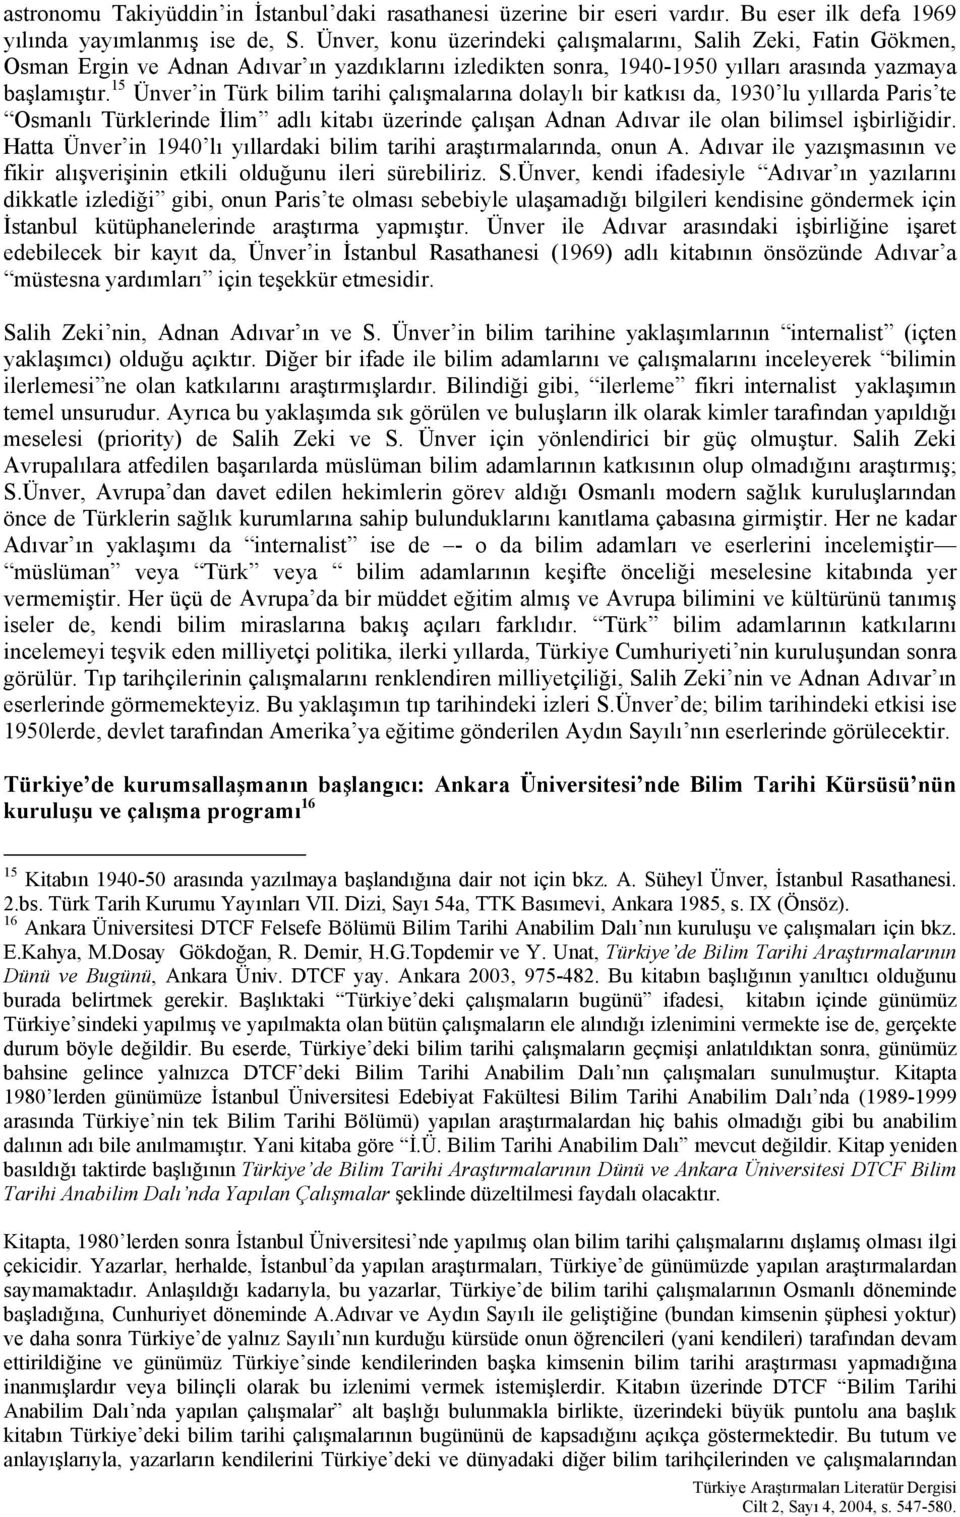 15 Ünver in Türk bilim tarihi çalışmalarına dolaylı bir katkısı da, 1930 lu yıllarda Paris te Osmanlı Türklerinde İlim adlı kitabı üzerinde çalışan Adnan Adıvar ile olan bilimsel işbirliğidir.